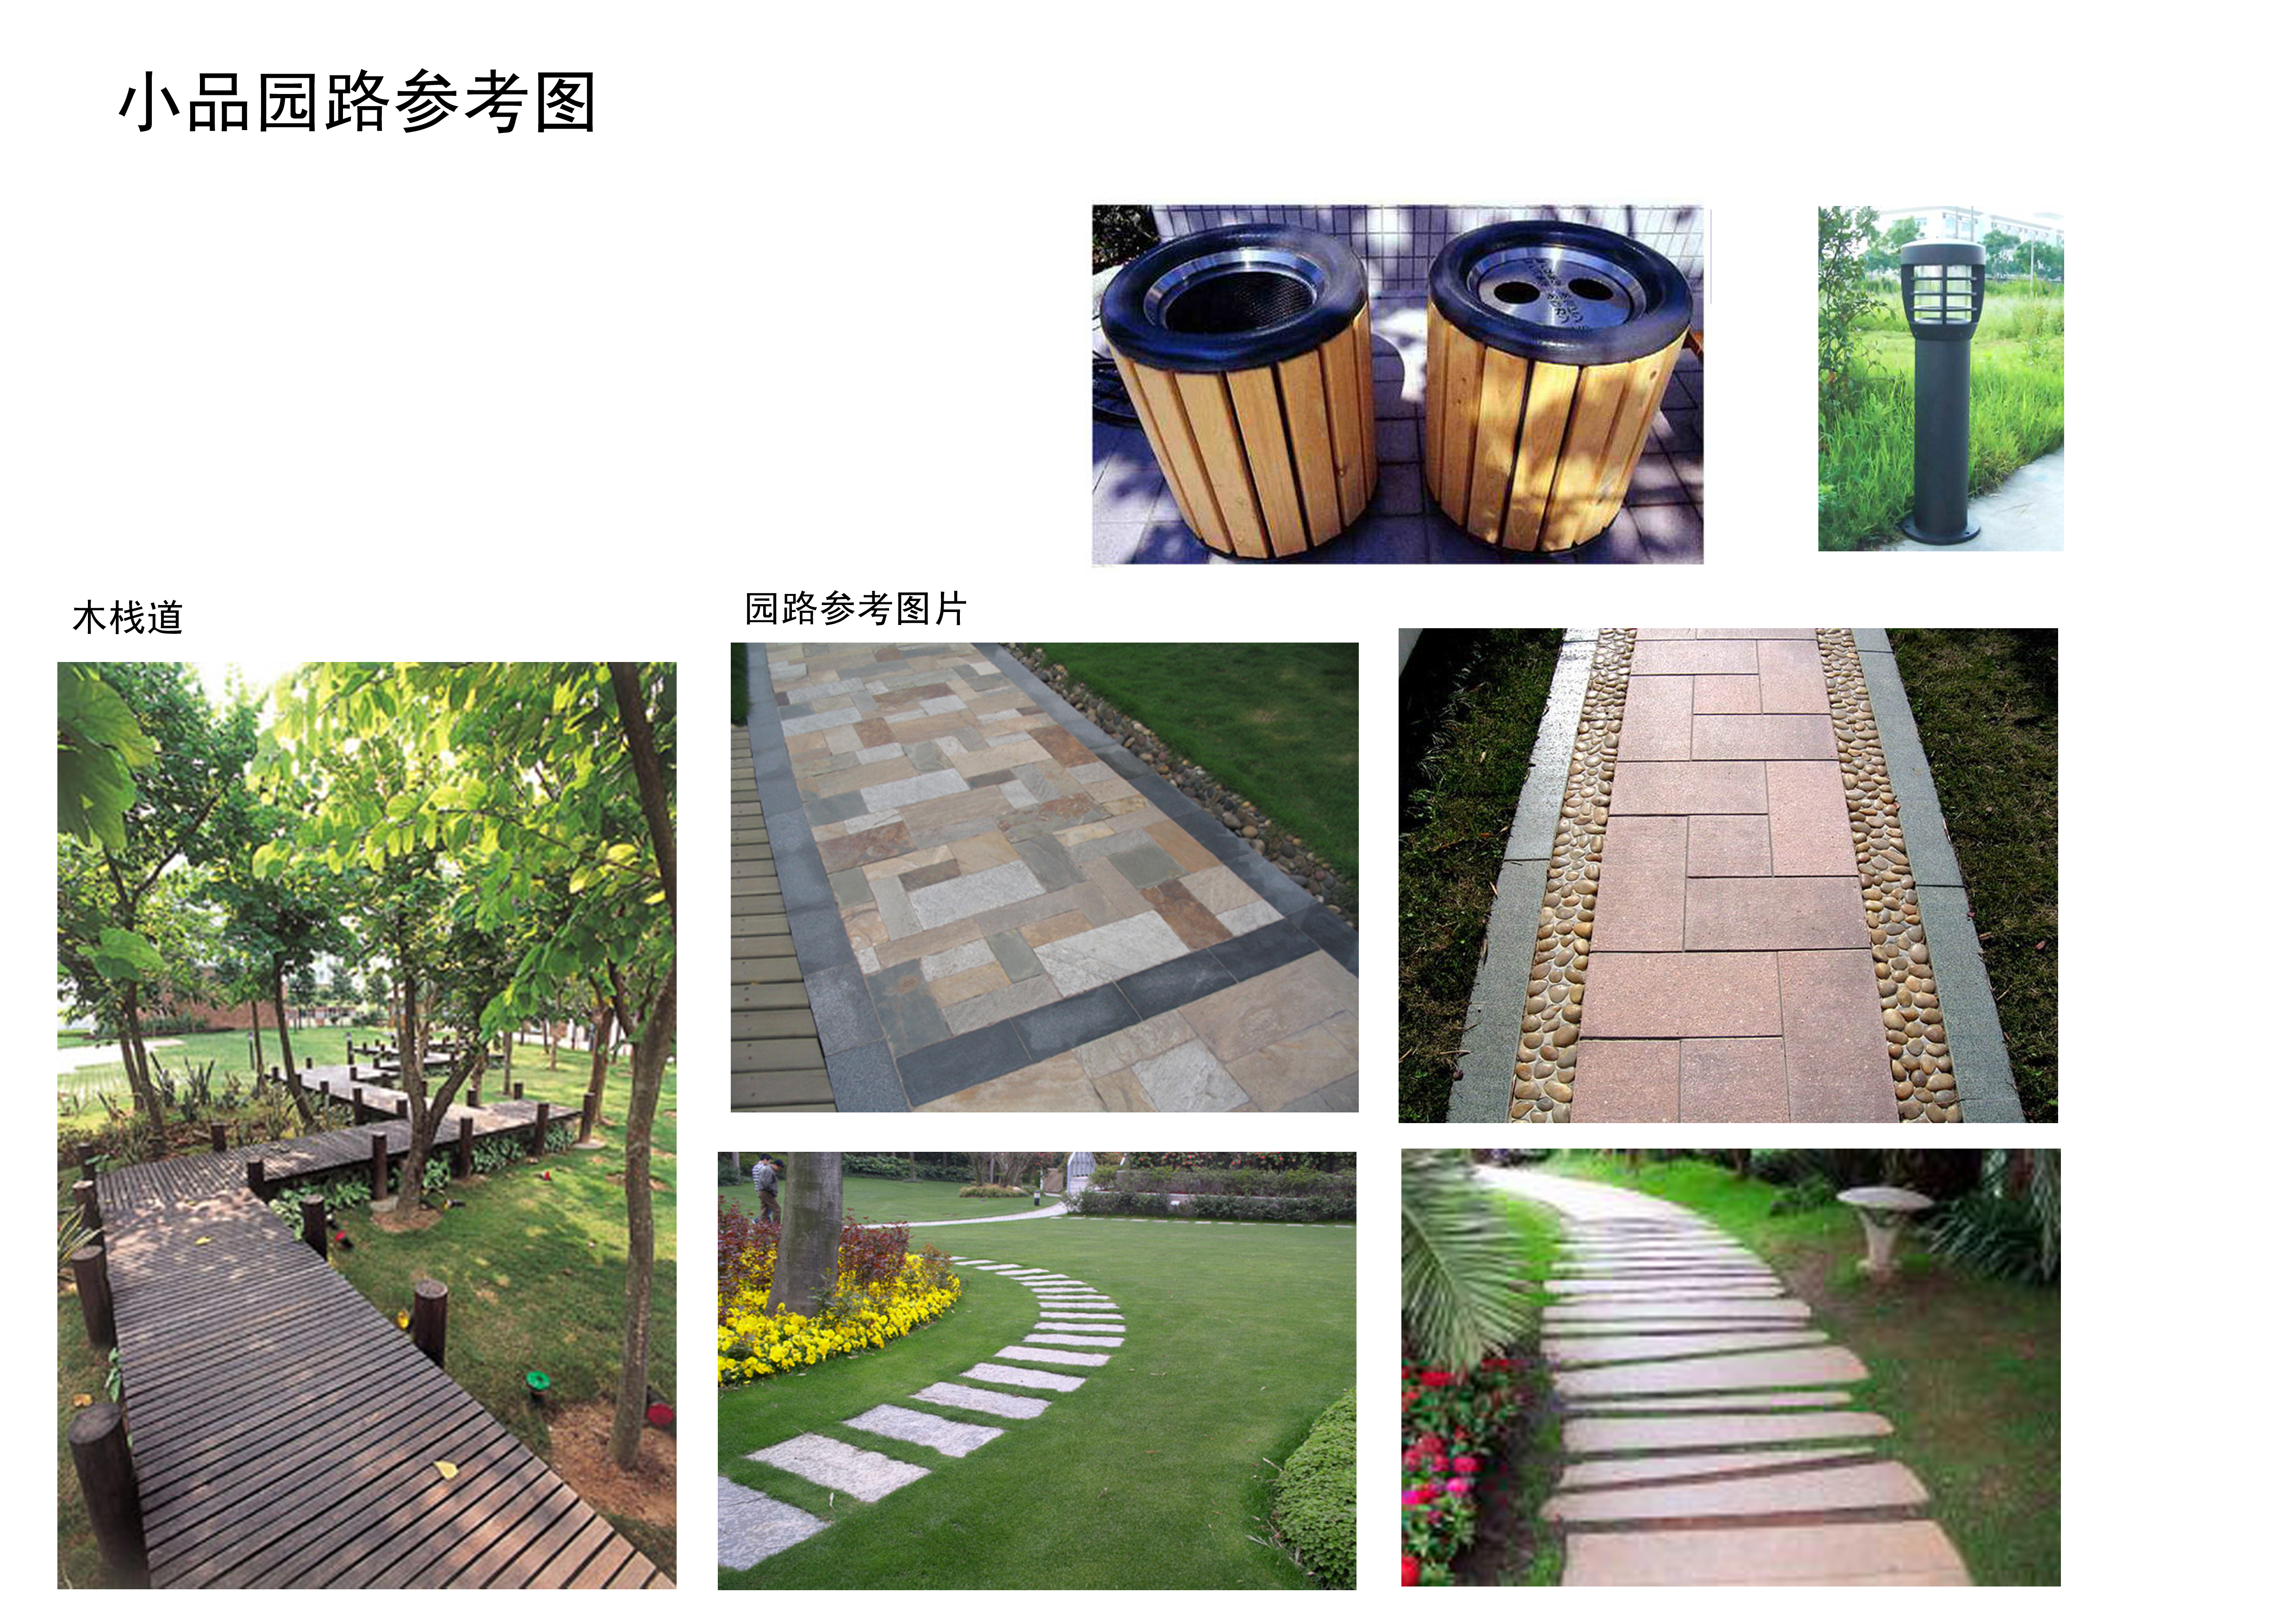 上海大学新校区景观设计